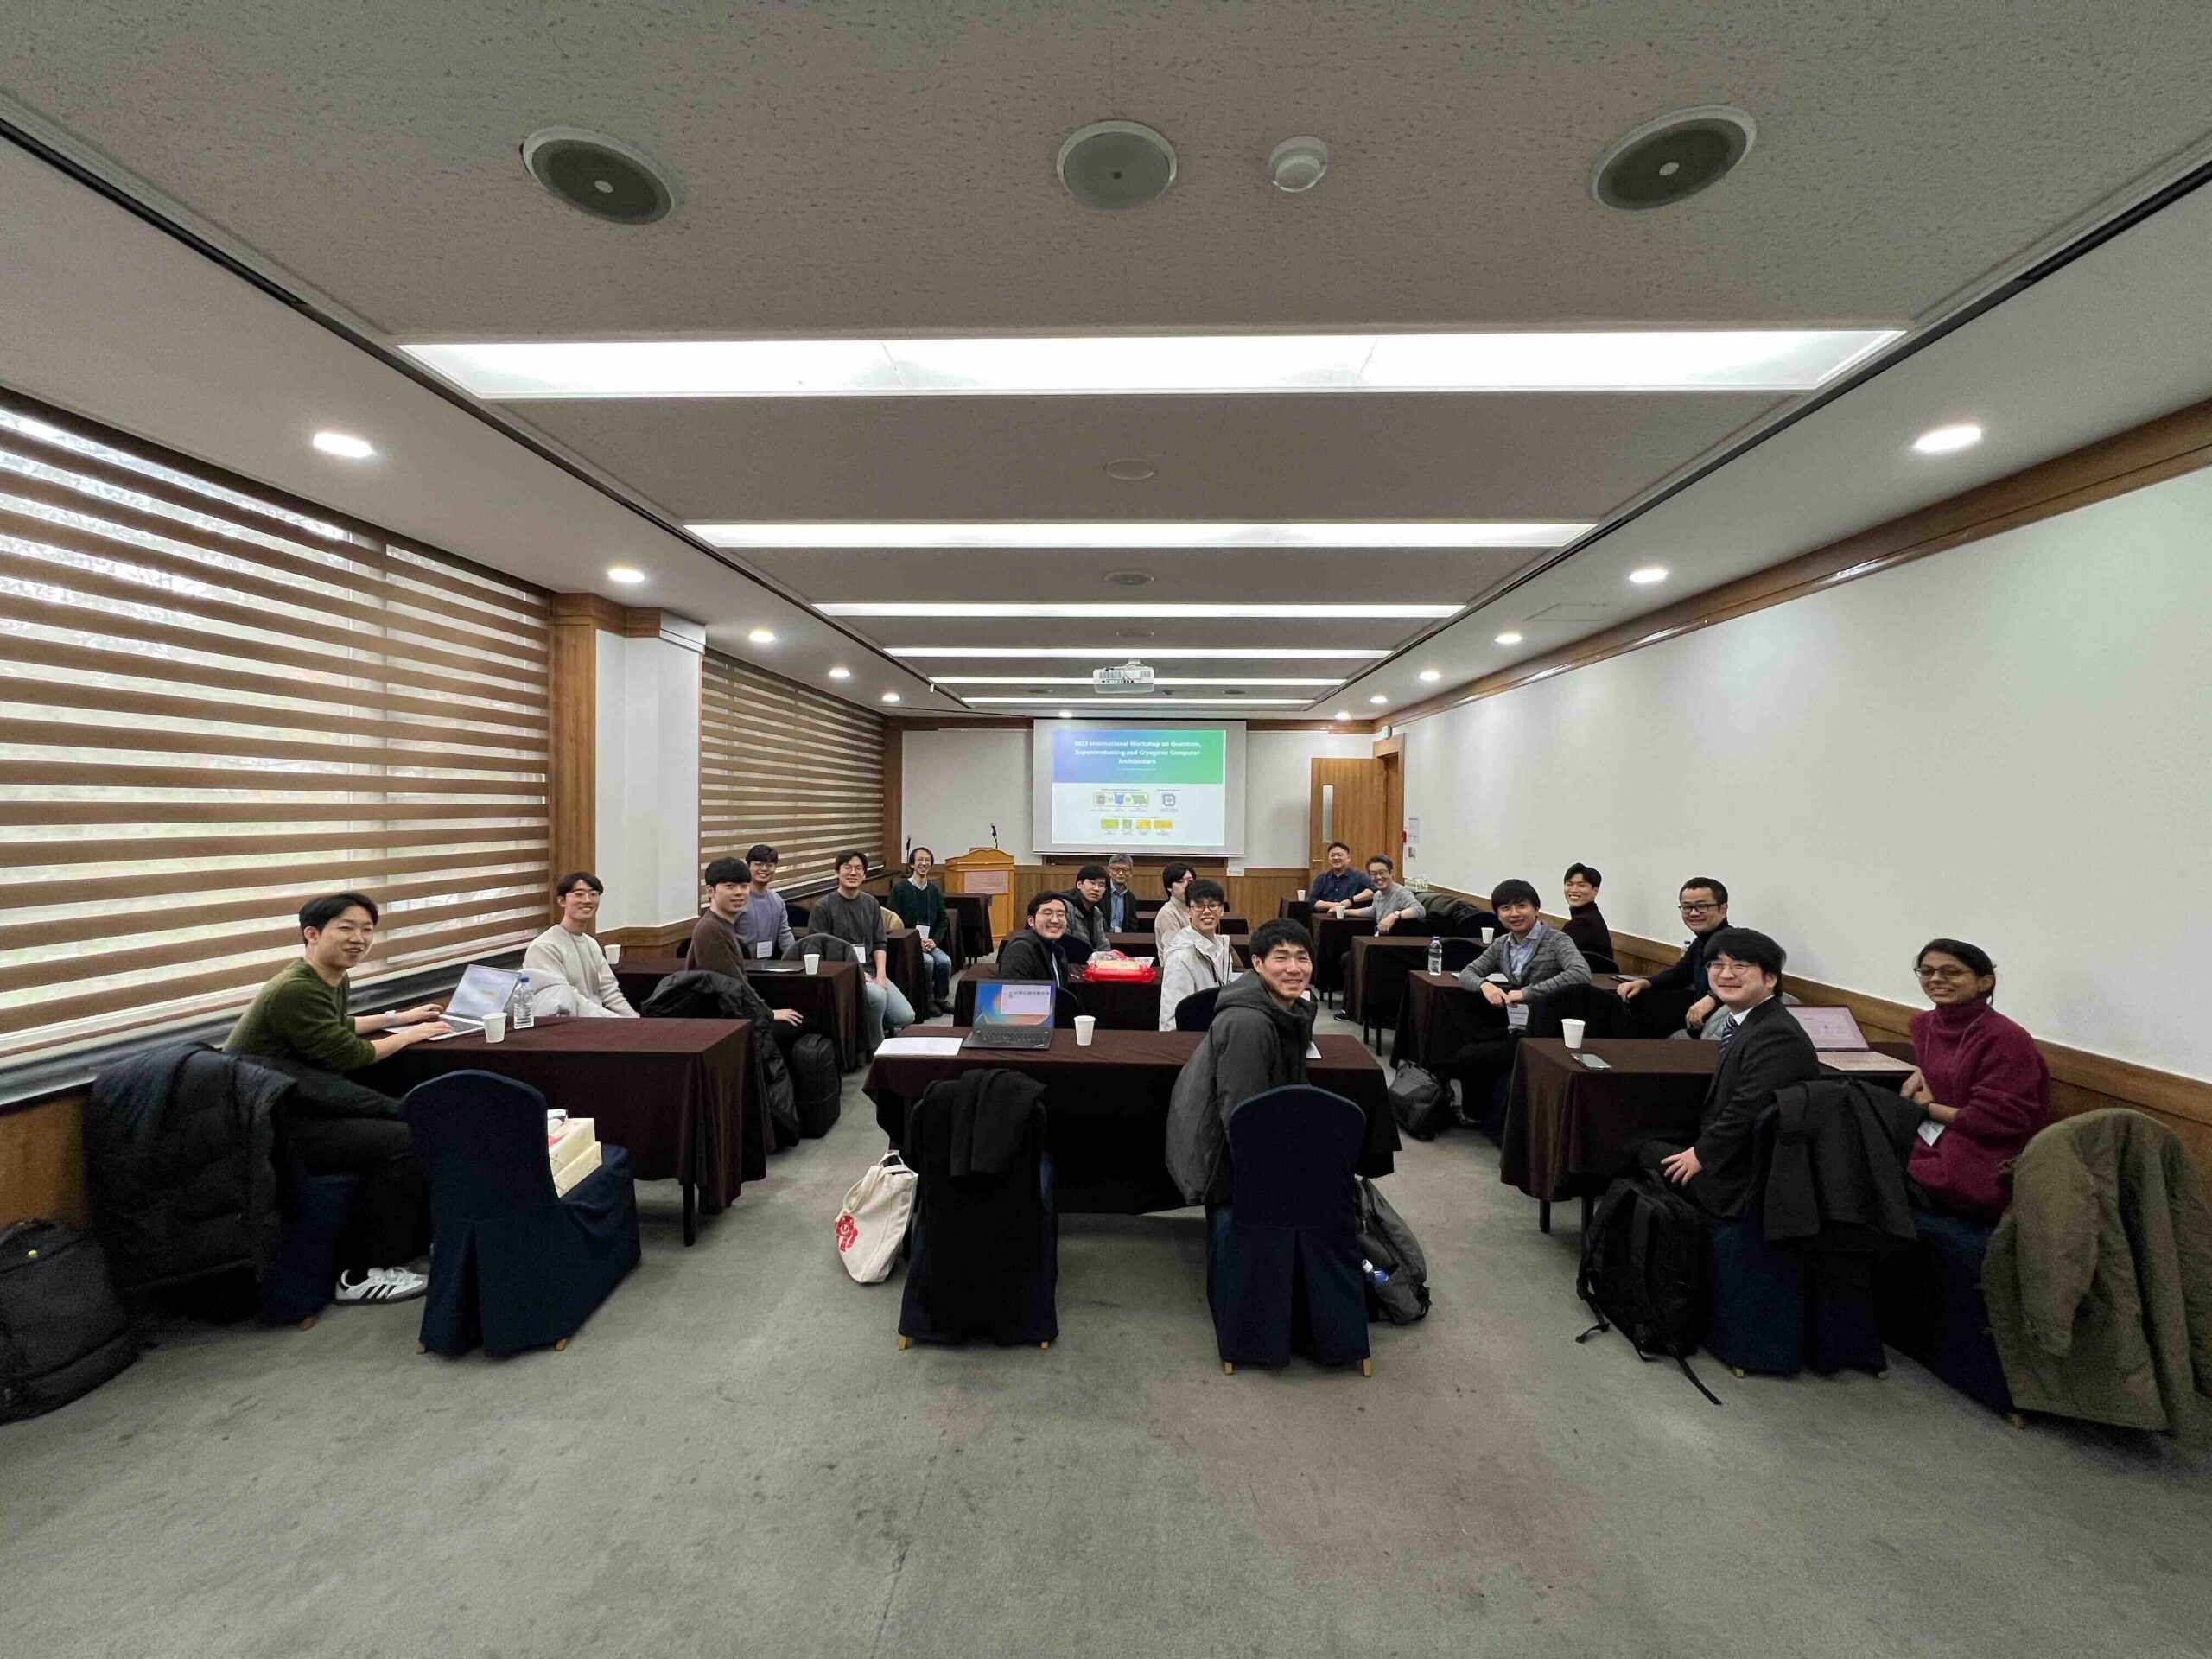 ソウル大学のHigh Performance Computer System (HPCS) Lab.を訪問し、極低温コンピューティングや量子コンピューティングに関するワークショップを開催しました！また、学生同士の技術交流会も行い、有意義な訪問となりました。